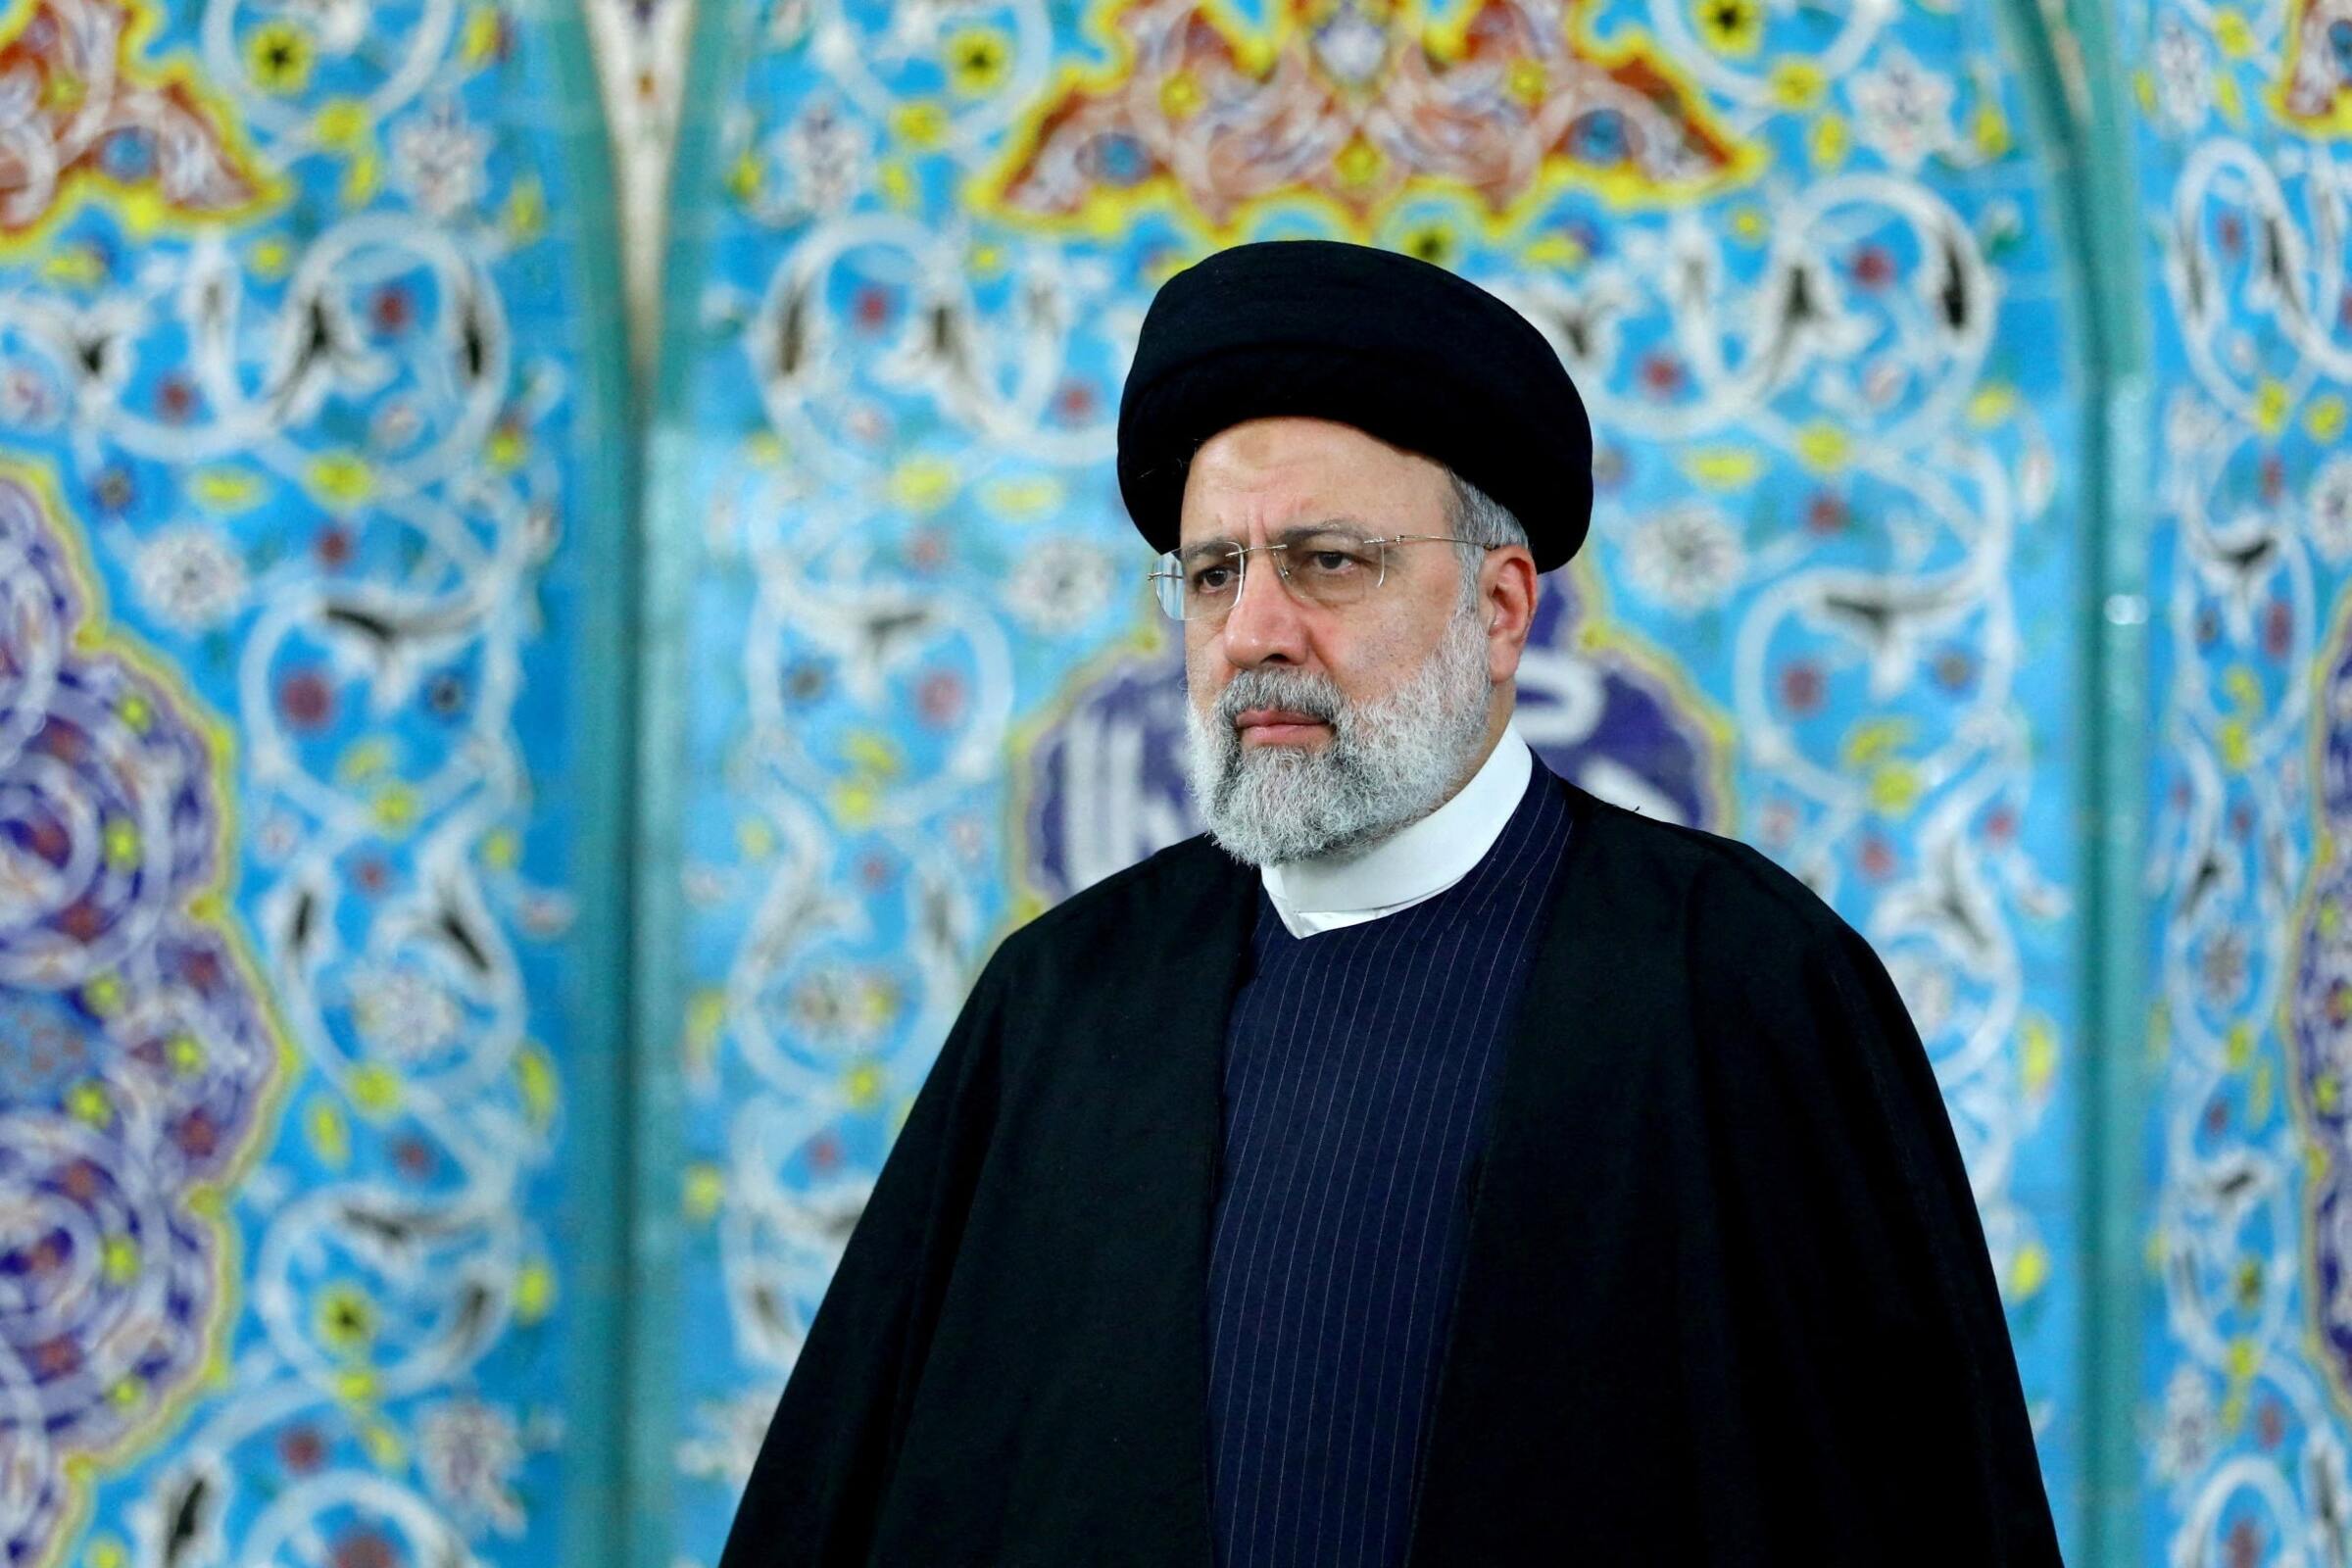 【图集】莱希遇难政局恐动荡  伊朗强硬派或更趋保守   